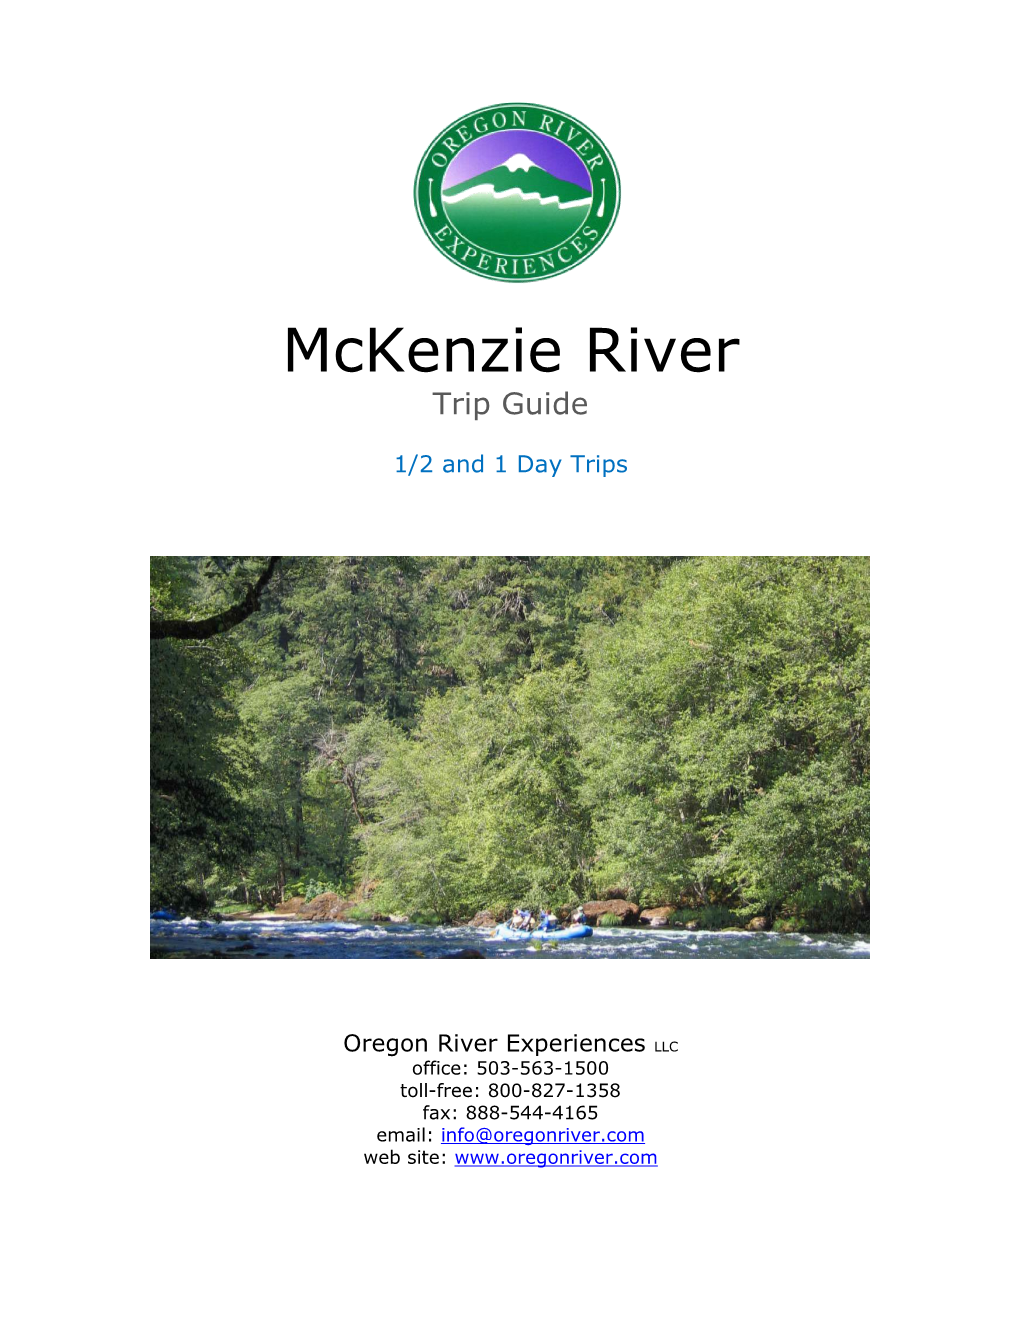 Mckenzie River Trip Guide